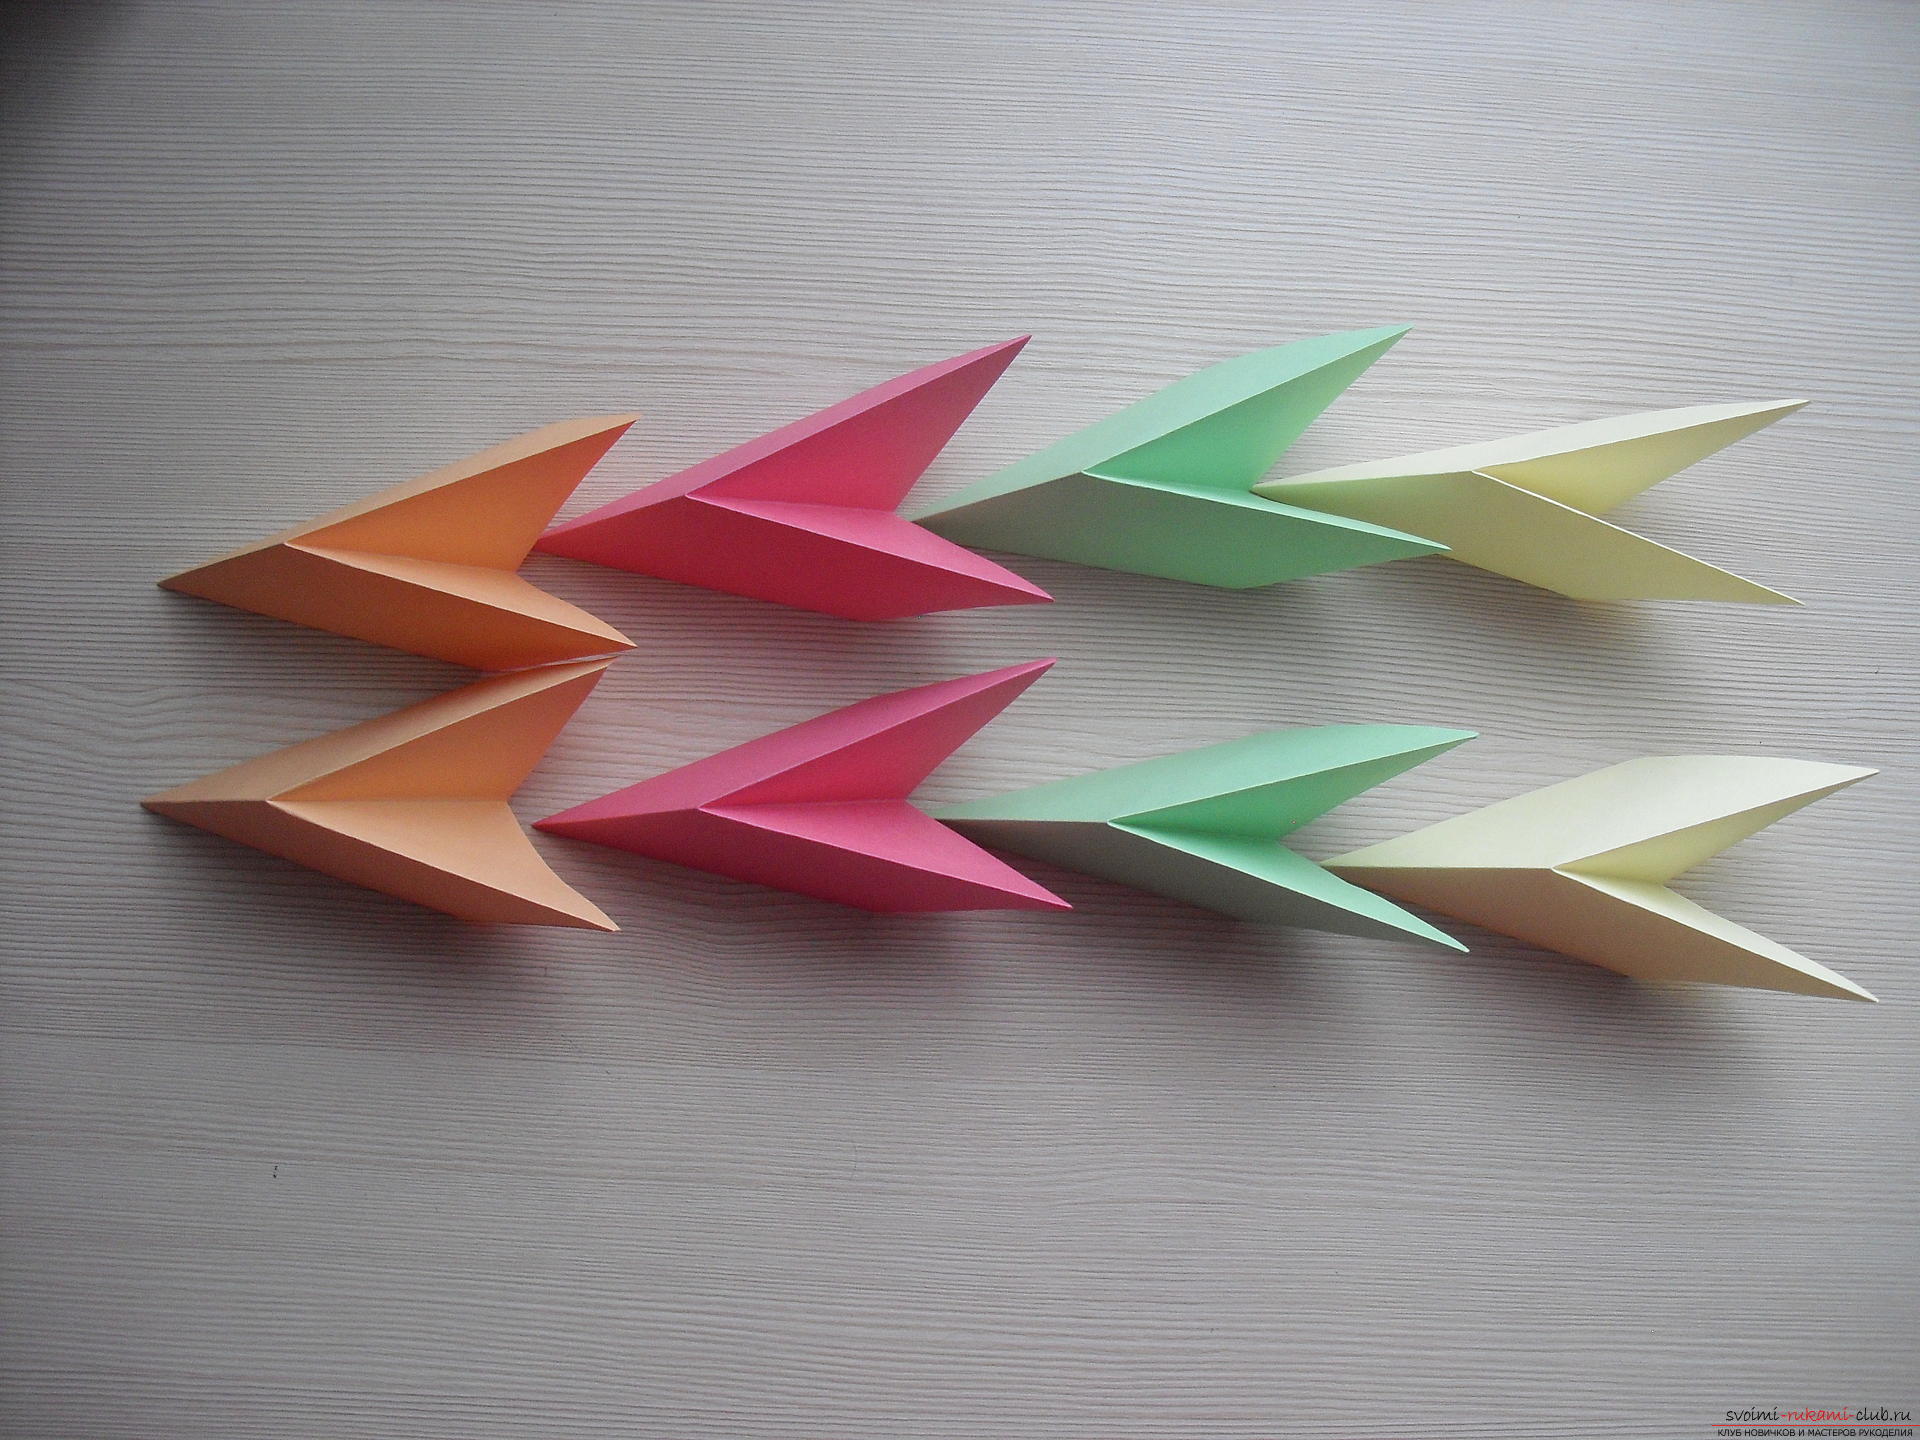 Этот мастер-класс расскажет как создать простое модульное оригами - трансформер.. Фото №10